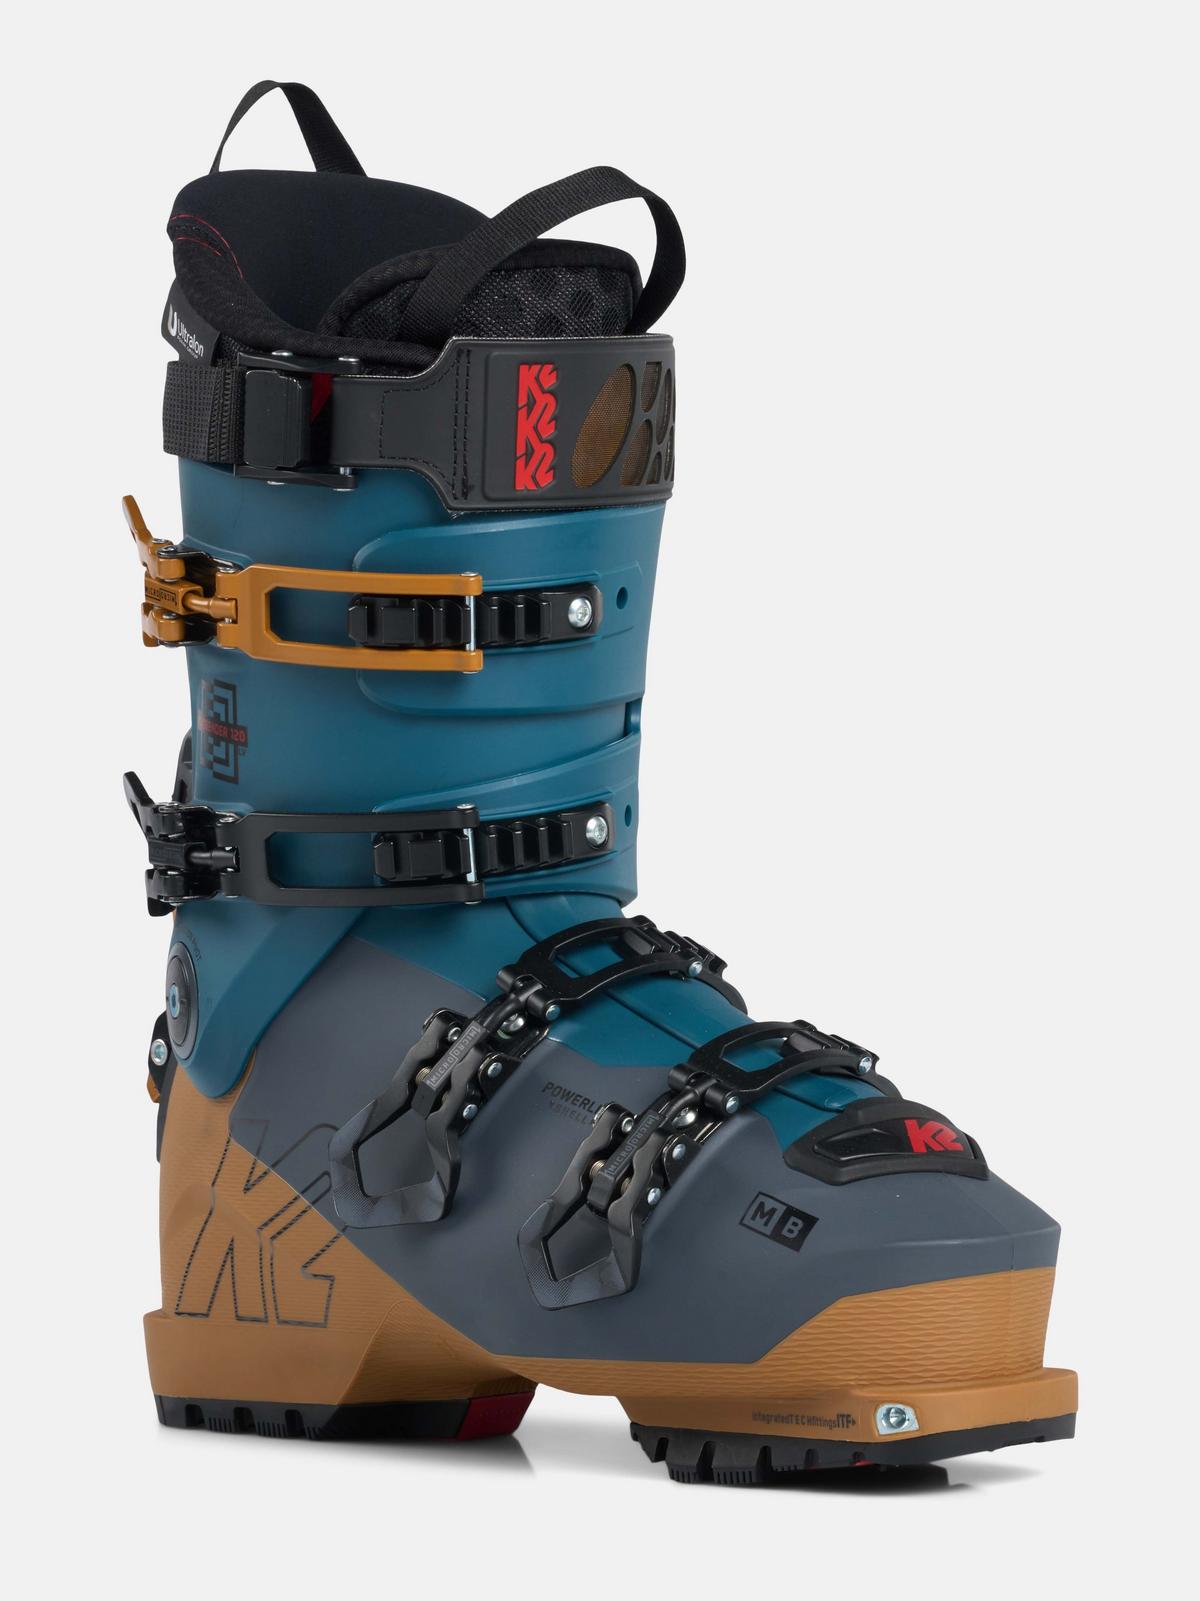 Mindbender 120 Ski Boots K2 Skis and K2 Snowboarding